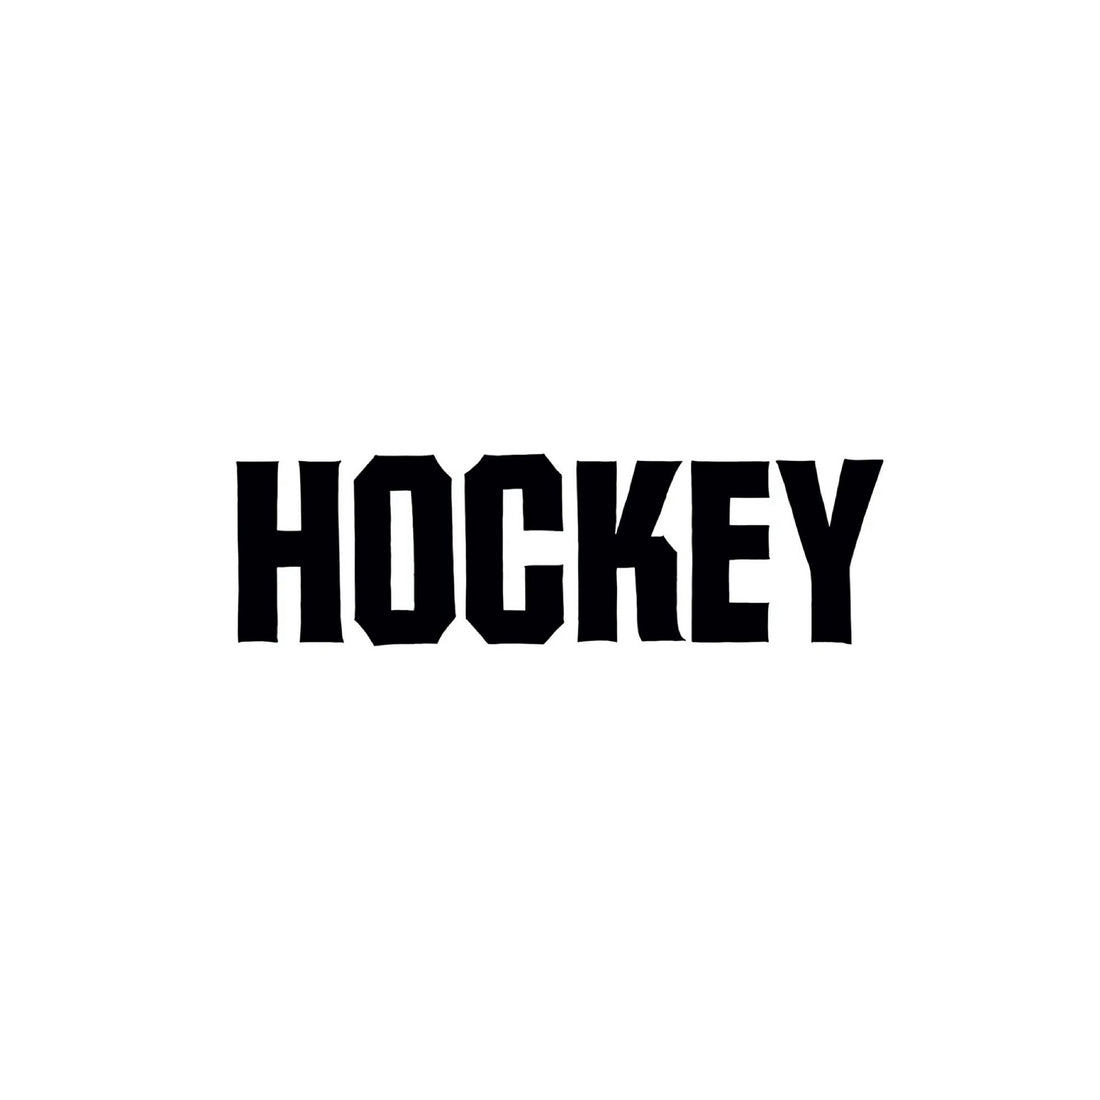  Hockey